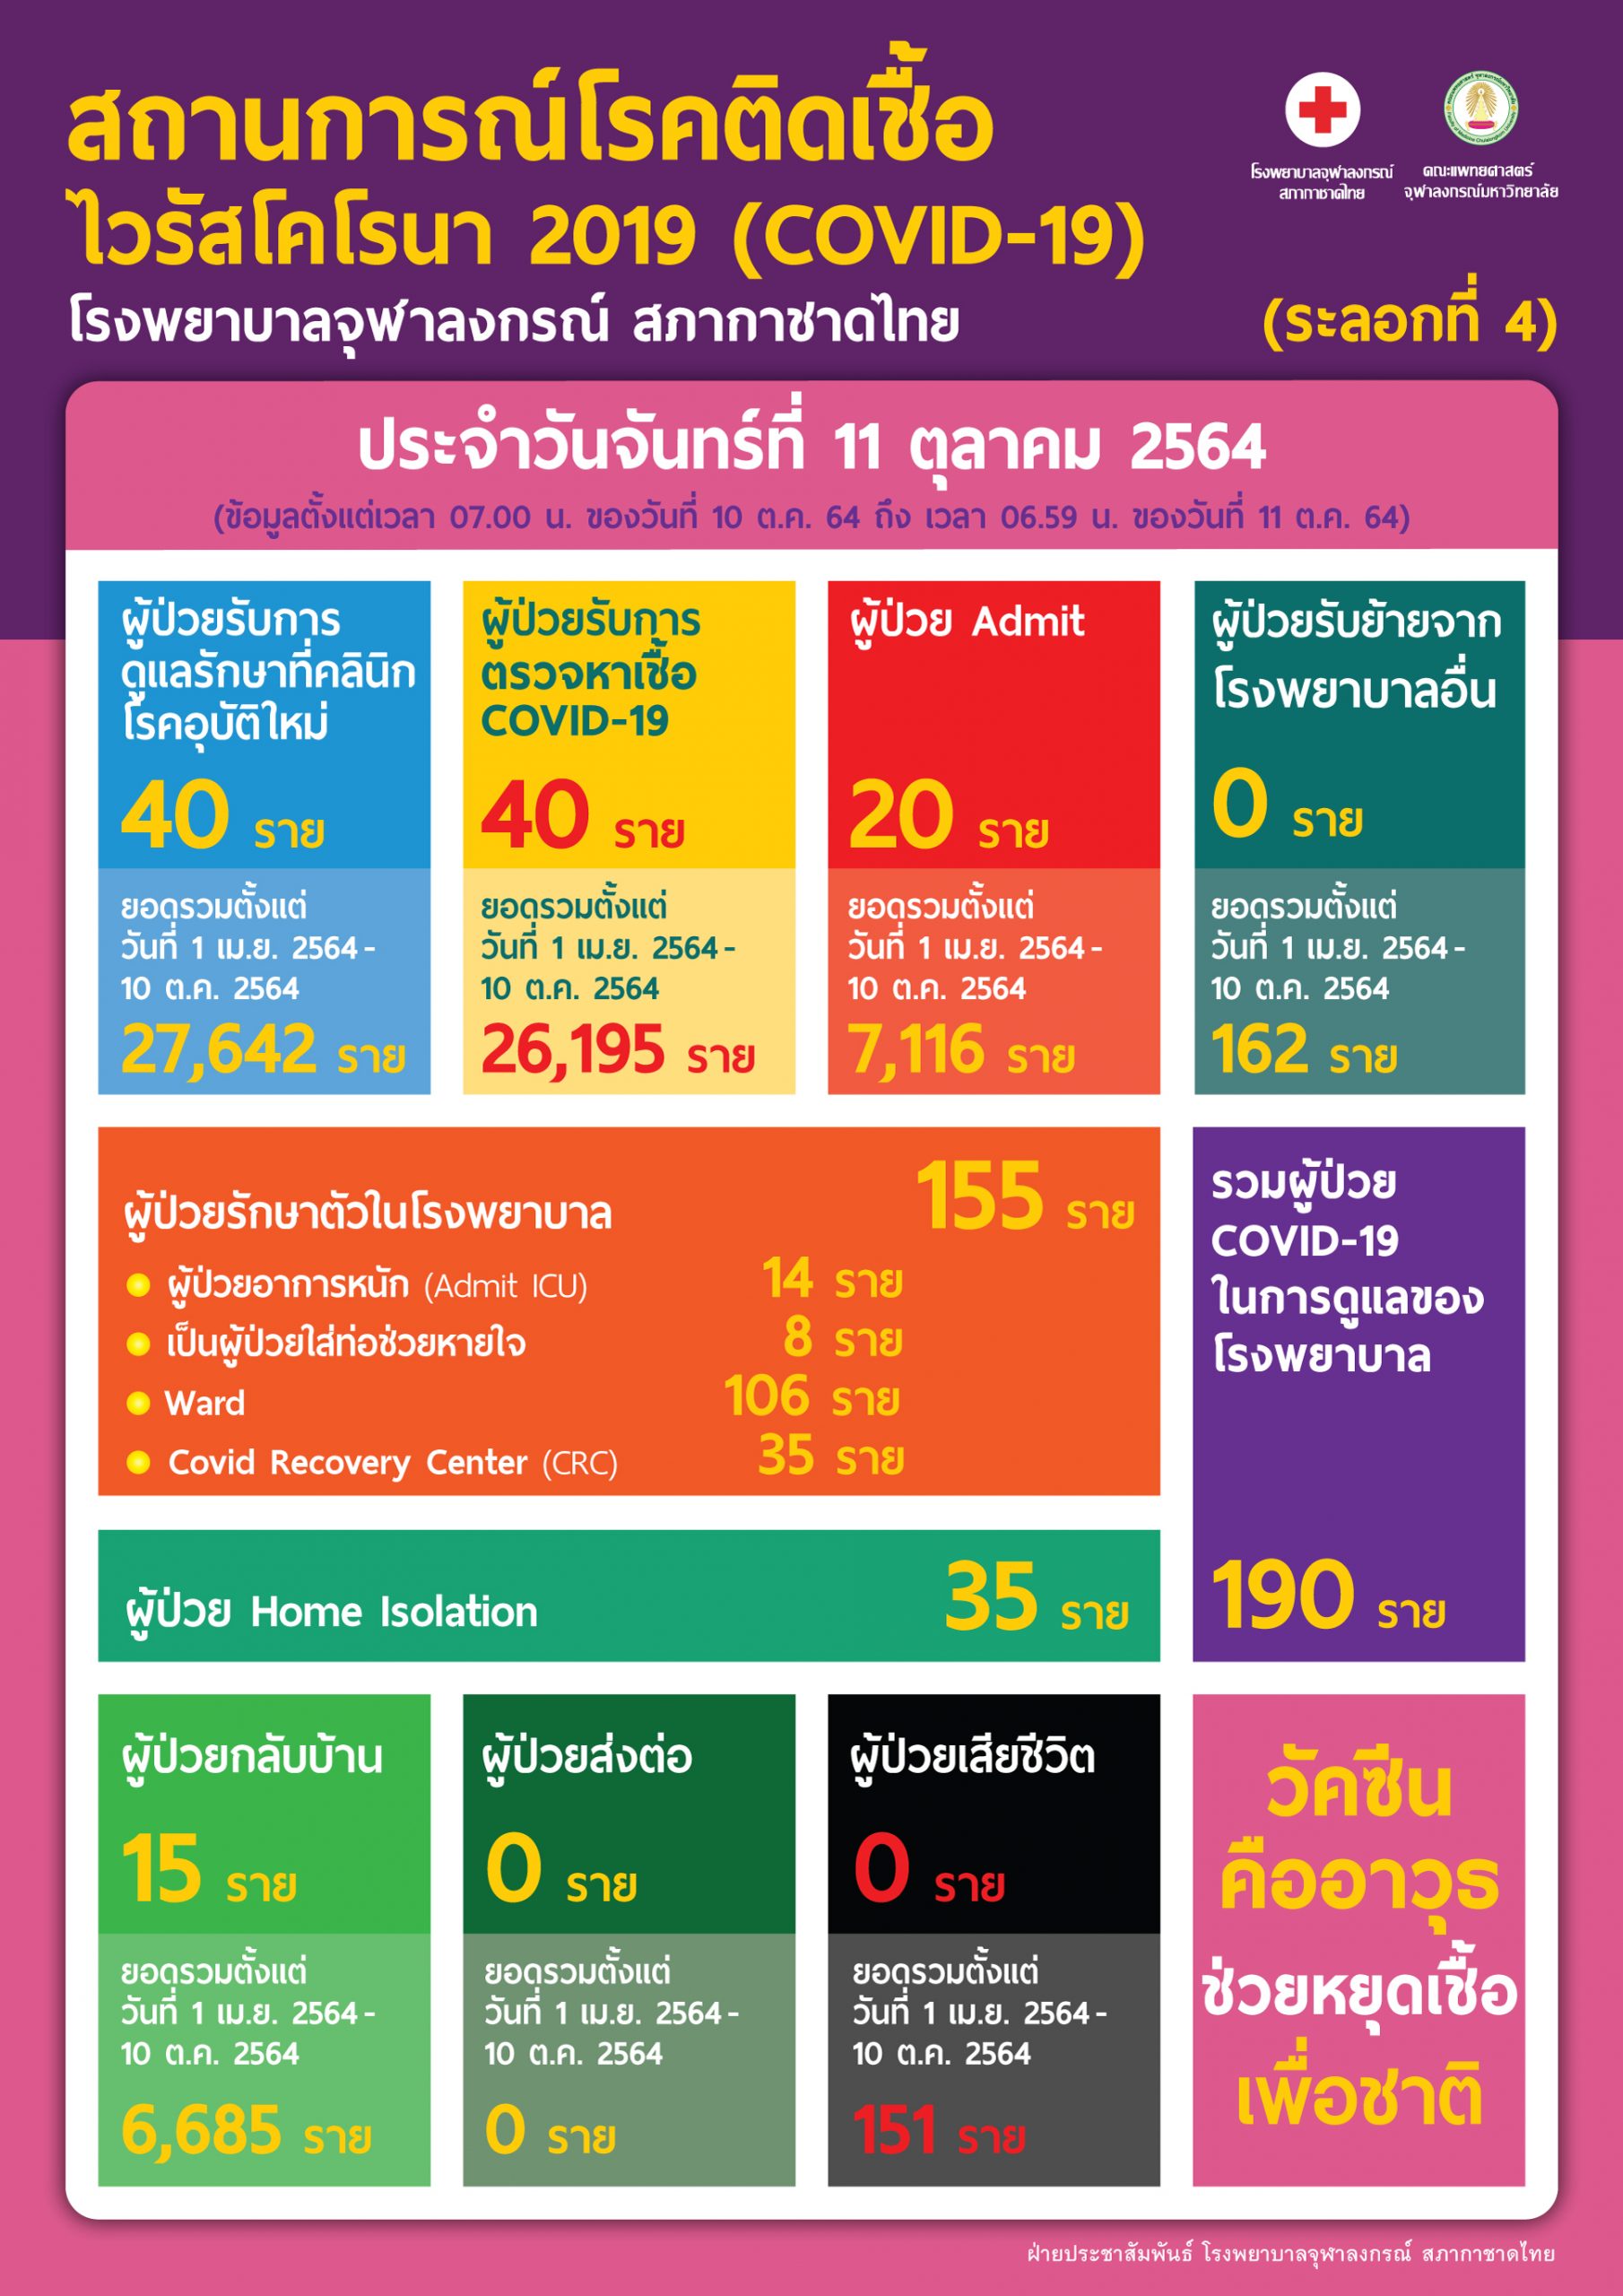 สถานการณ์โรคติดเชื้อไวรัสโคโรนา 2019 (COVID-19) (ระลอกที่ 4) โรงพยาบาลจุฬาลงกรณ์ สภากาชาดไทย  ประจำวันจันทร์ที่ 11 ตุลาคม 2564